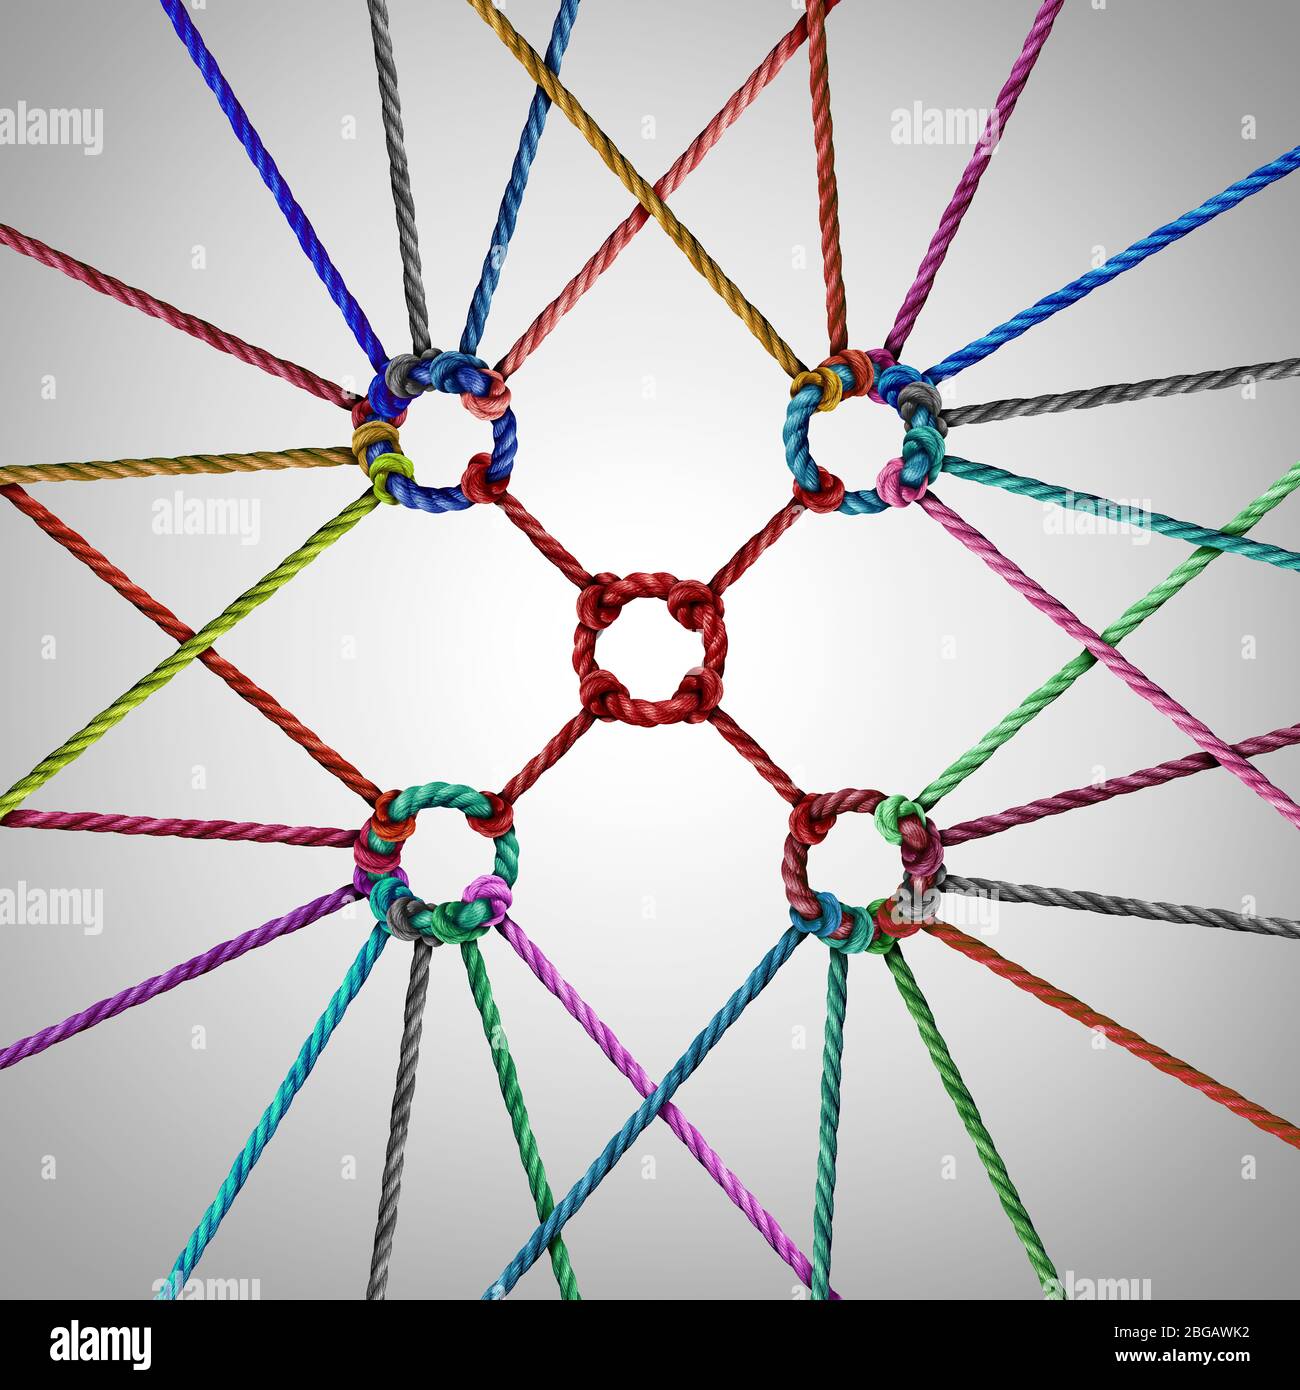 Team Unity Concept e e il lavoro di squadra come metafora aziendale per unire una partnership di gruppo come corde diverse collegate insieme. Foto Stock